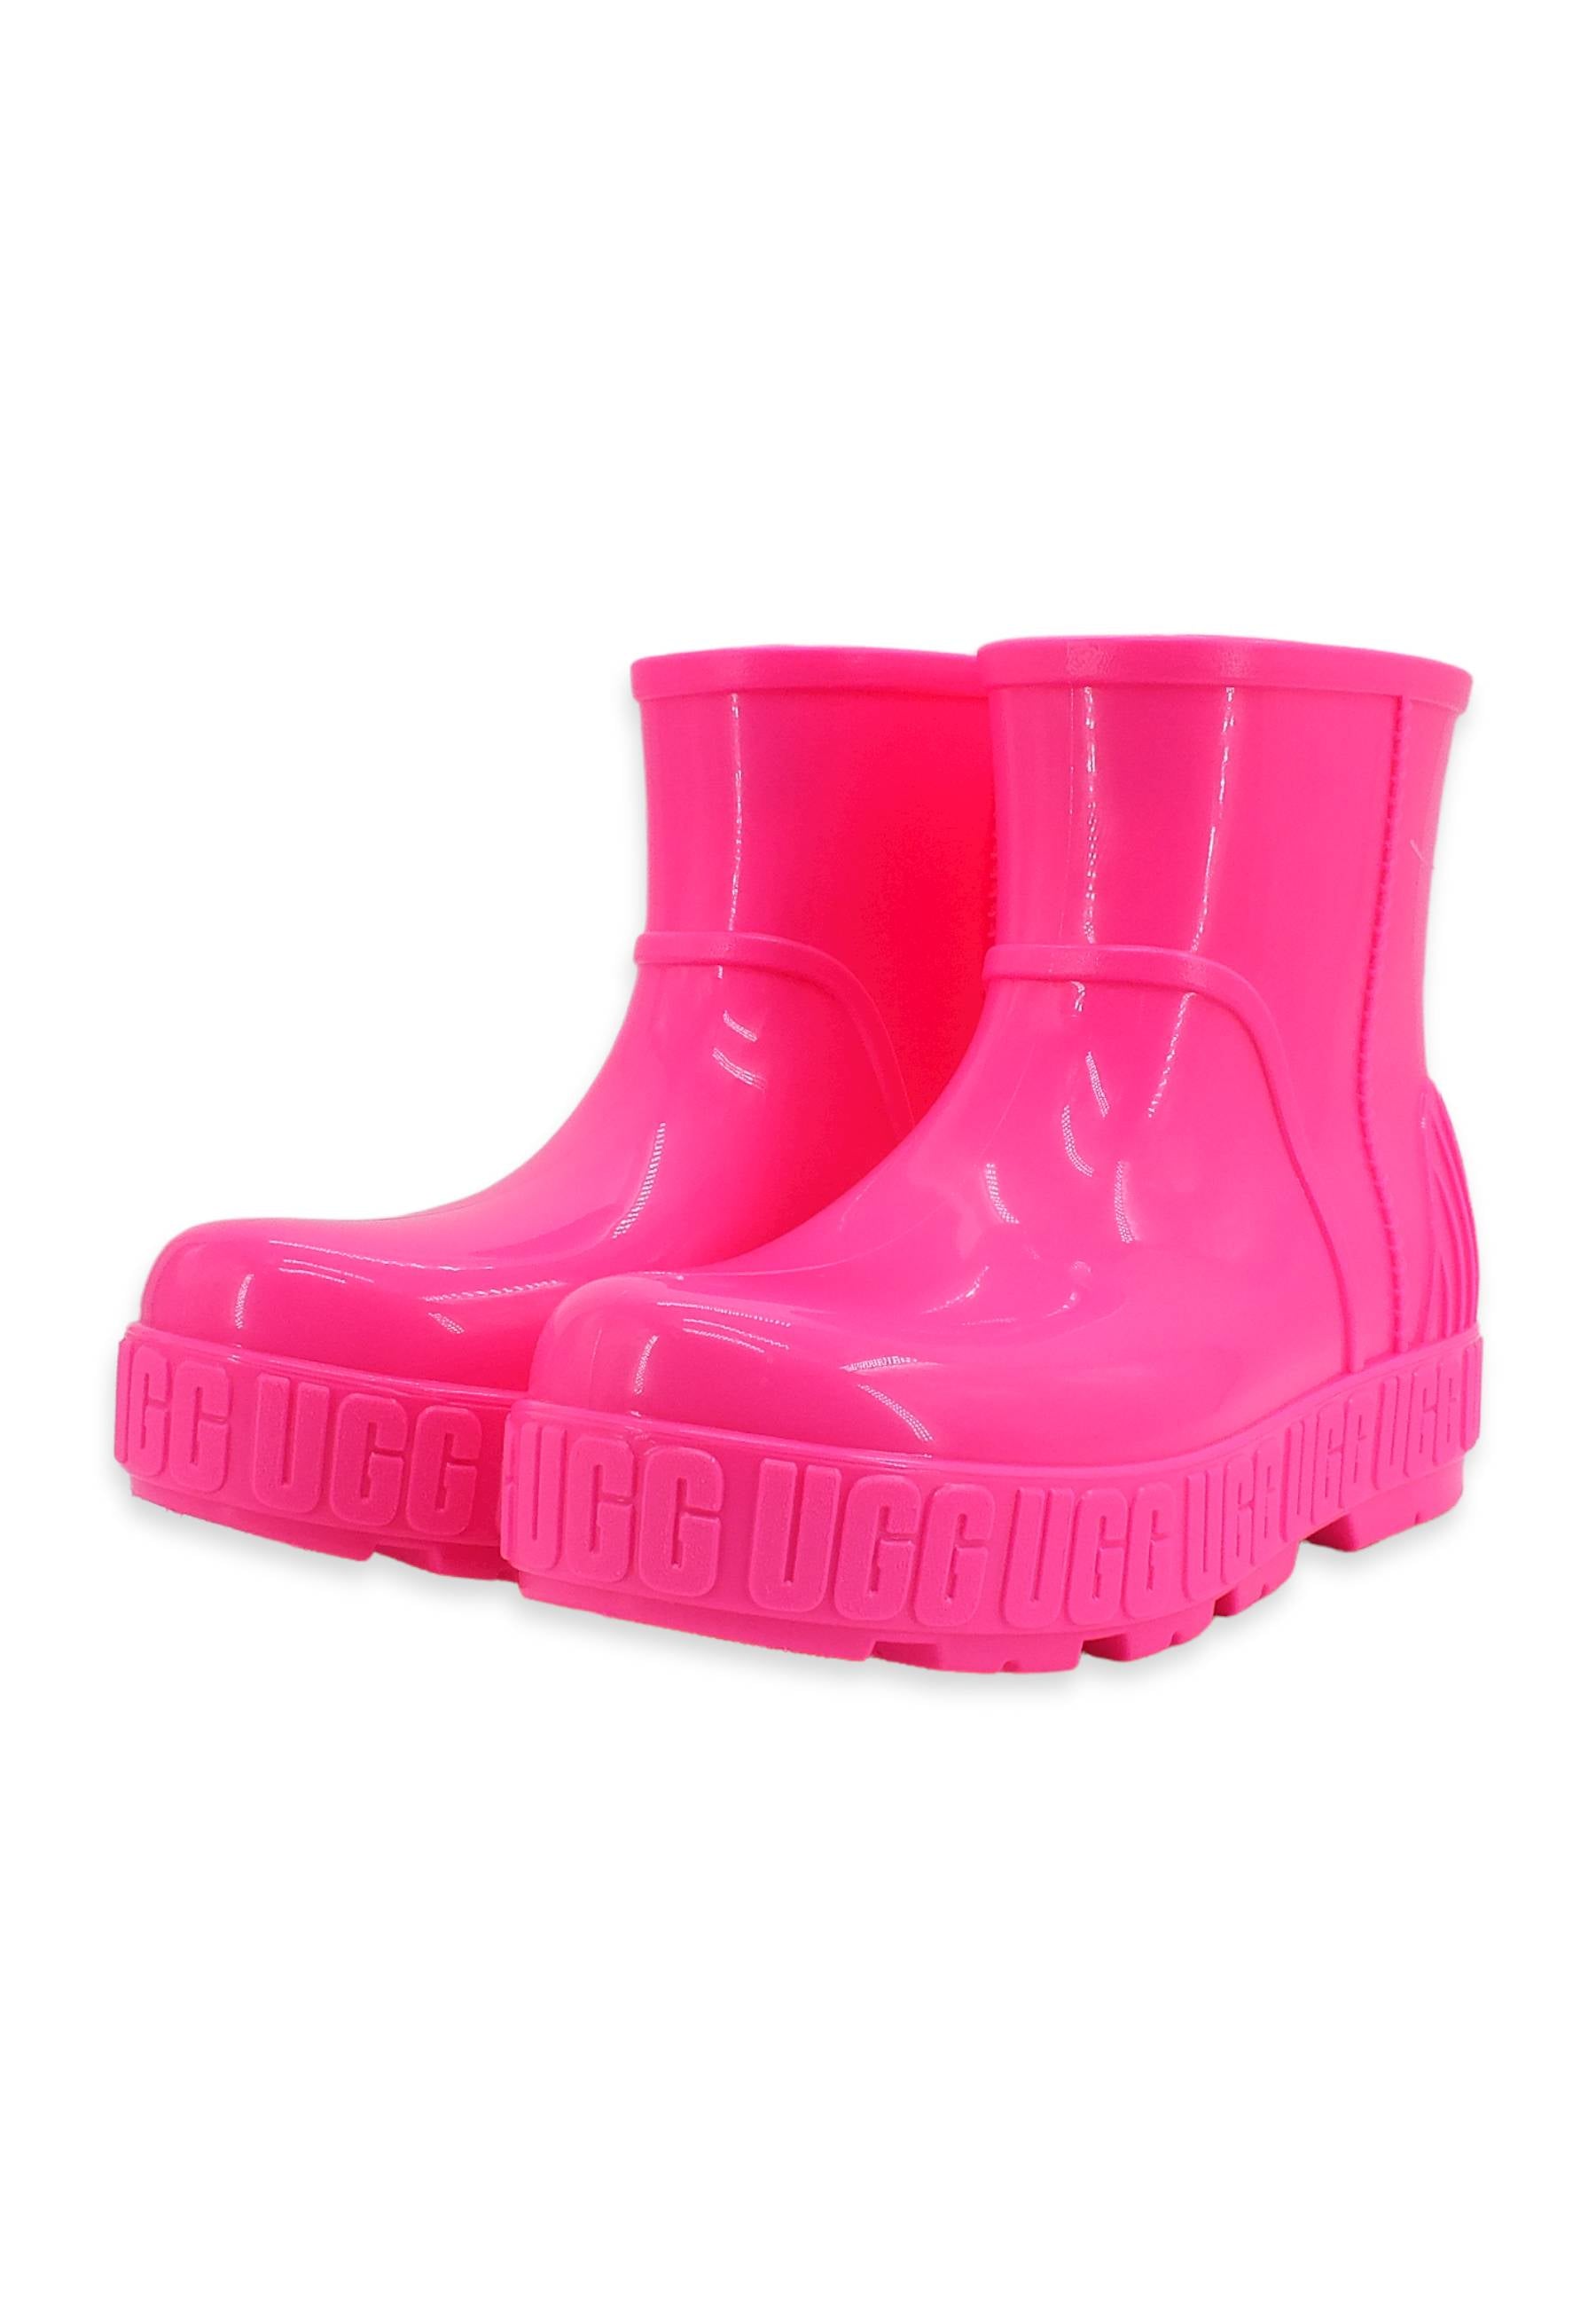 UGG Drizlita Stivaletto Donna Taffy Pink W1125731 - Sandrini Calzature e Abbigliamento